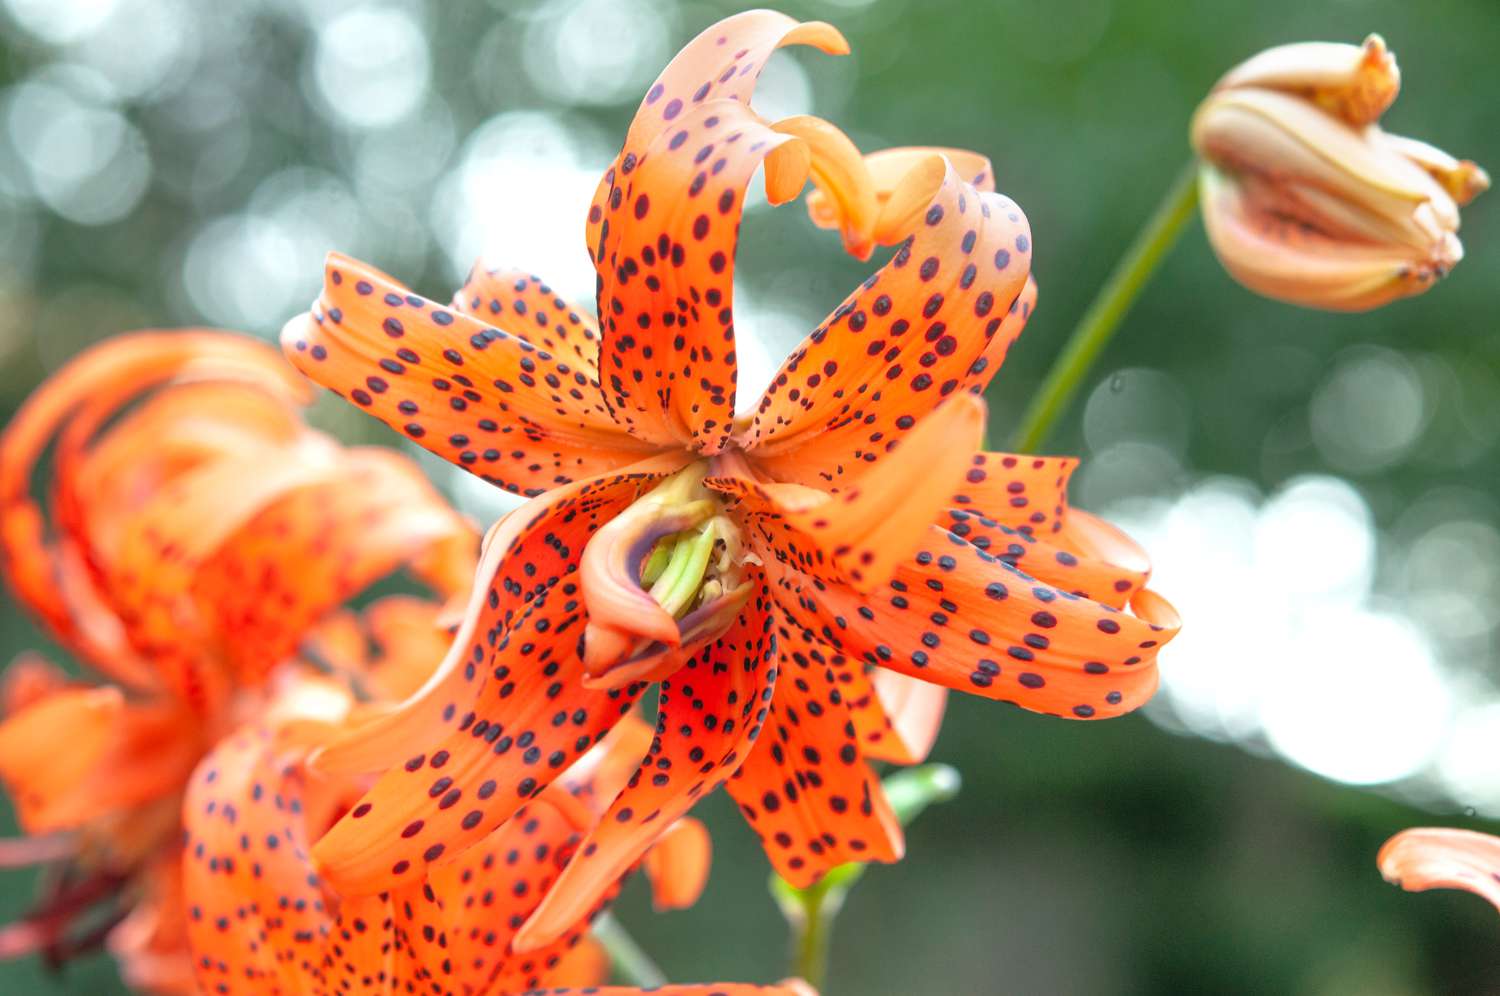 Doppelte Form der Tigerlilie mit schwarz gefleckten Blüten auf orangefarbenen Blütenblättern in Nahaufnahme